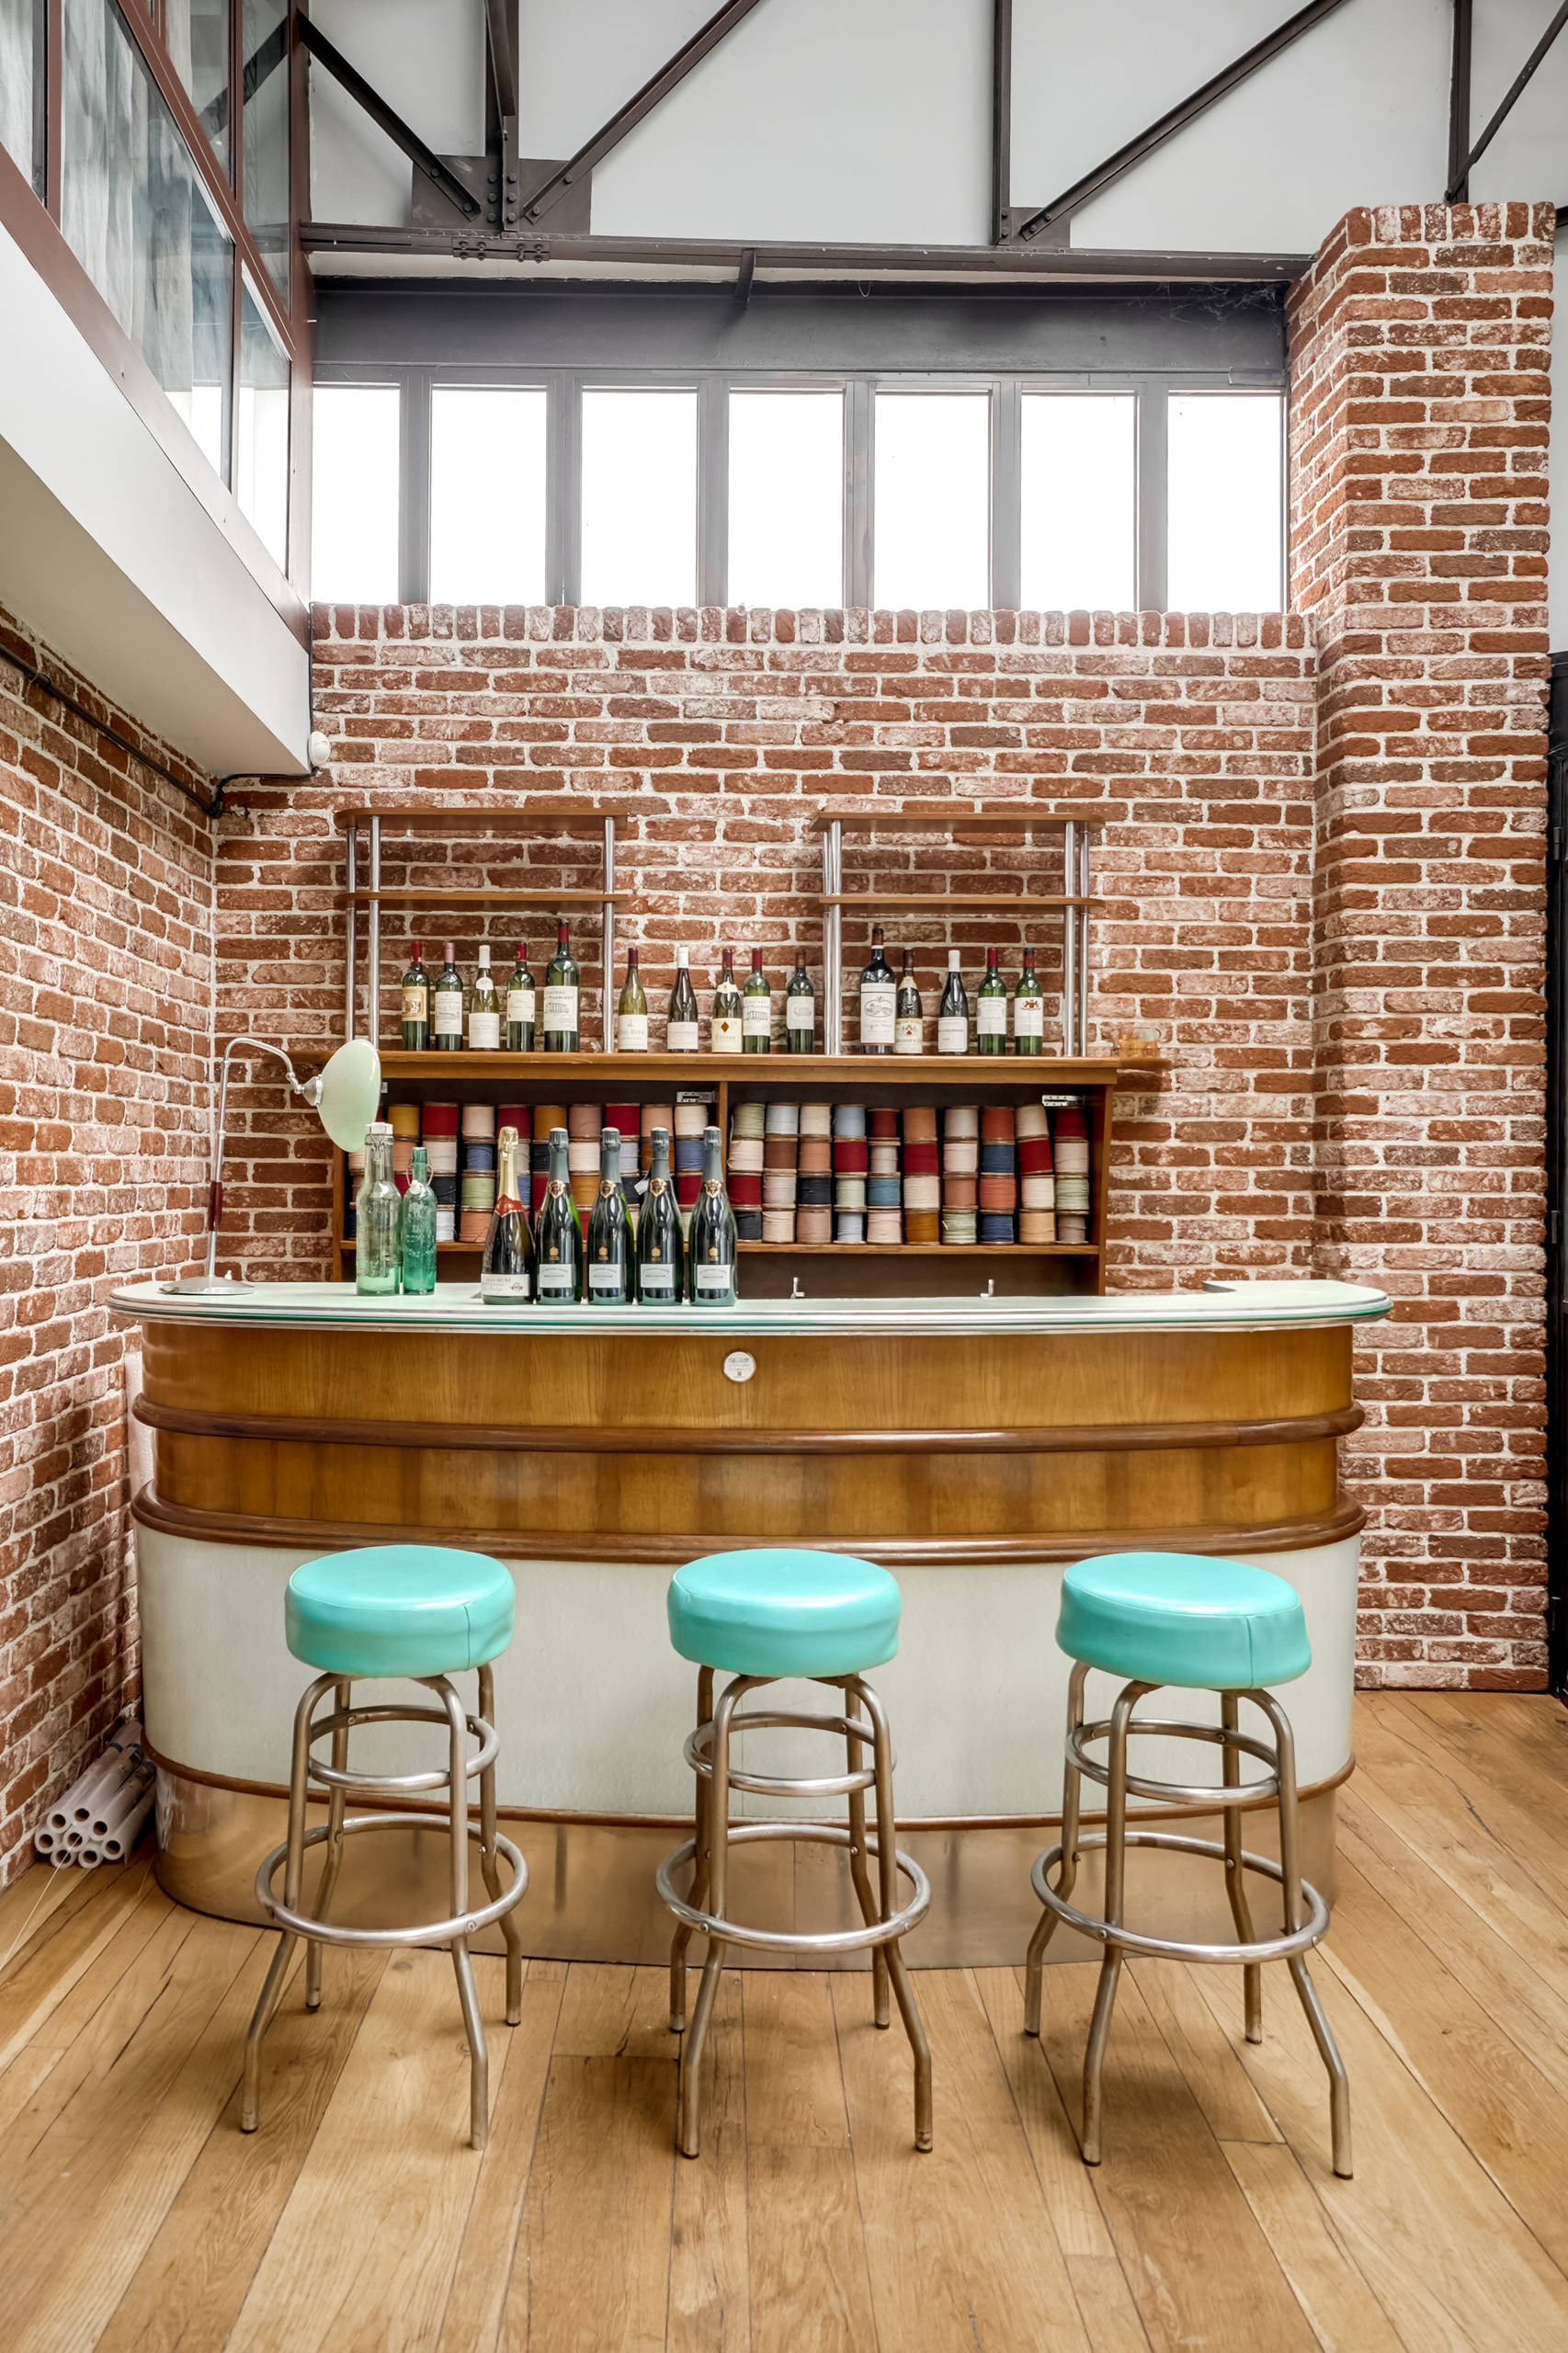 Idées pour décorer un bar avec un style vintage industrielle